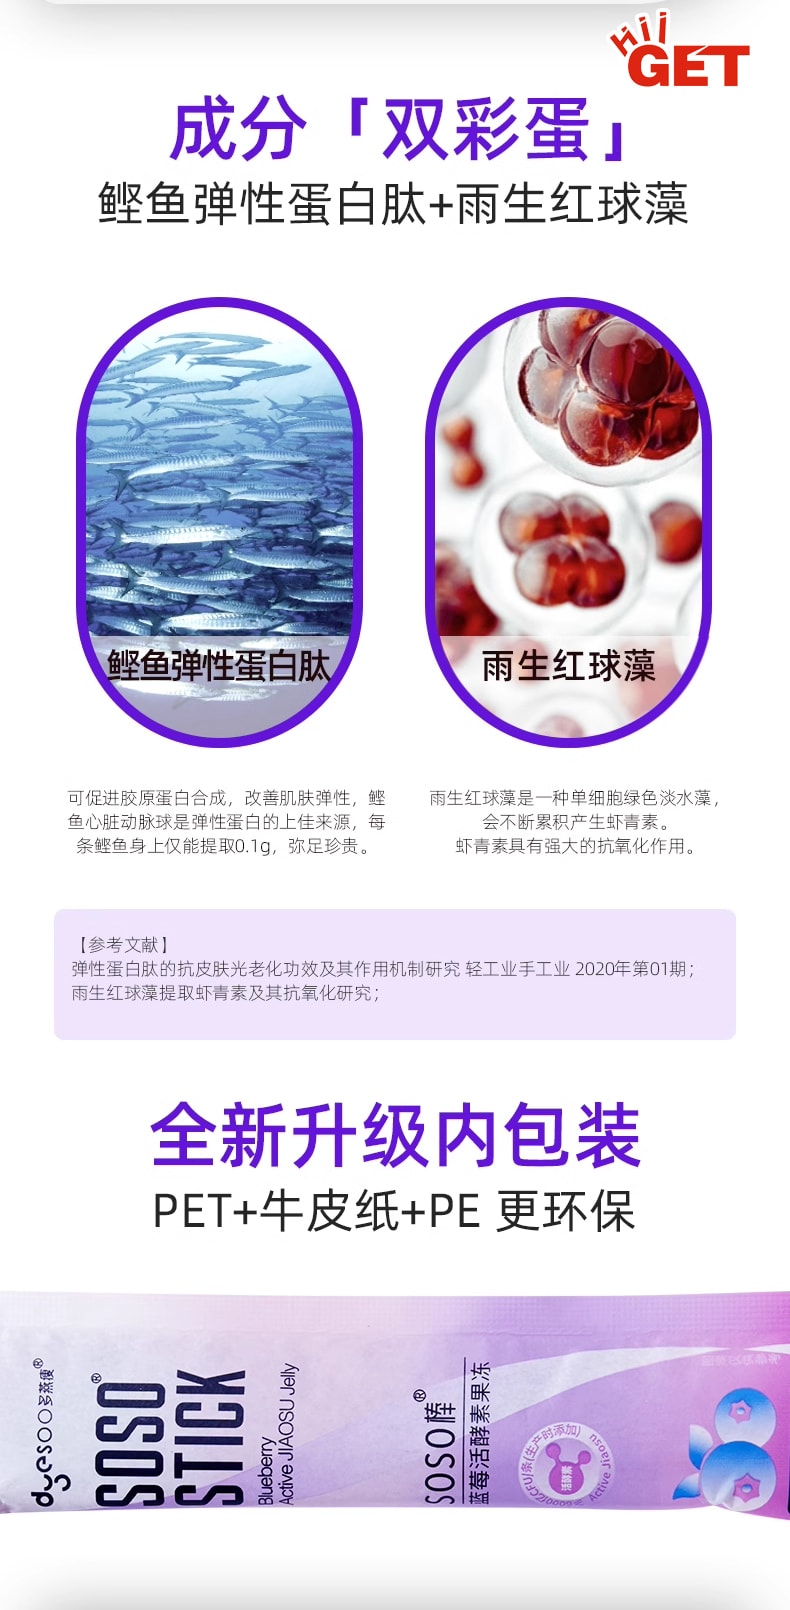 多燕瘦 SoSo 棒藍莓活酵素果凍 20g*5bags